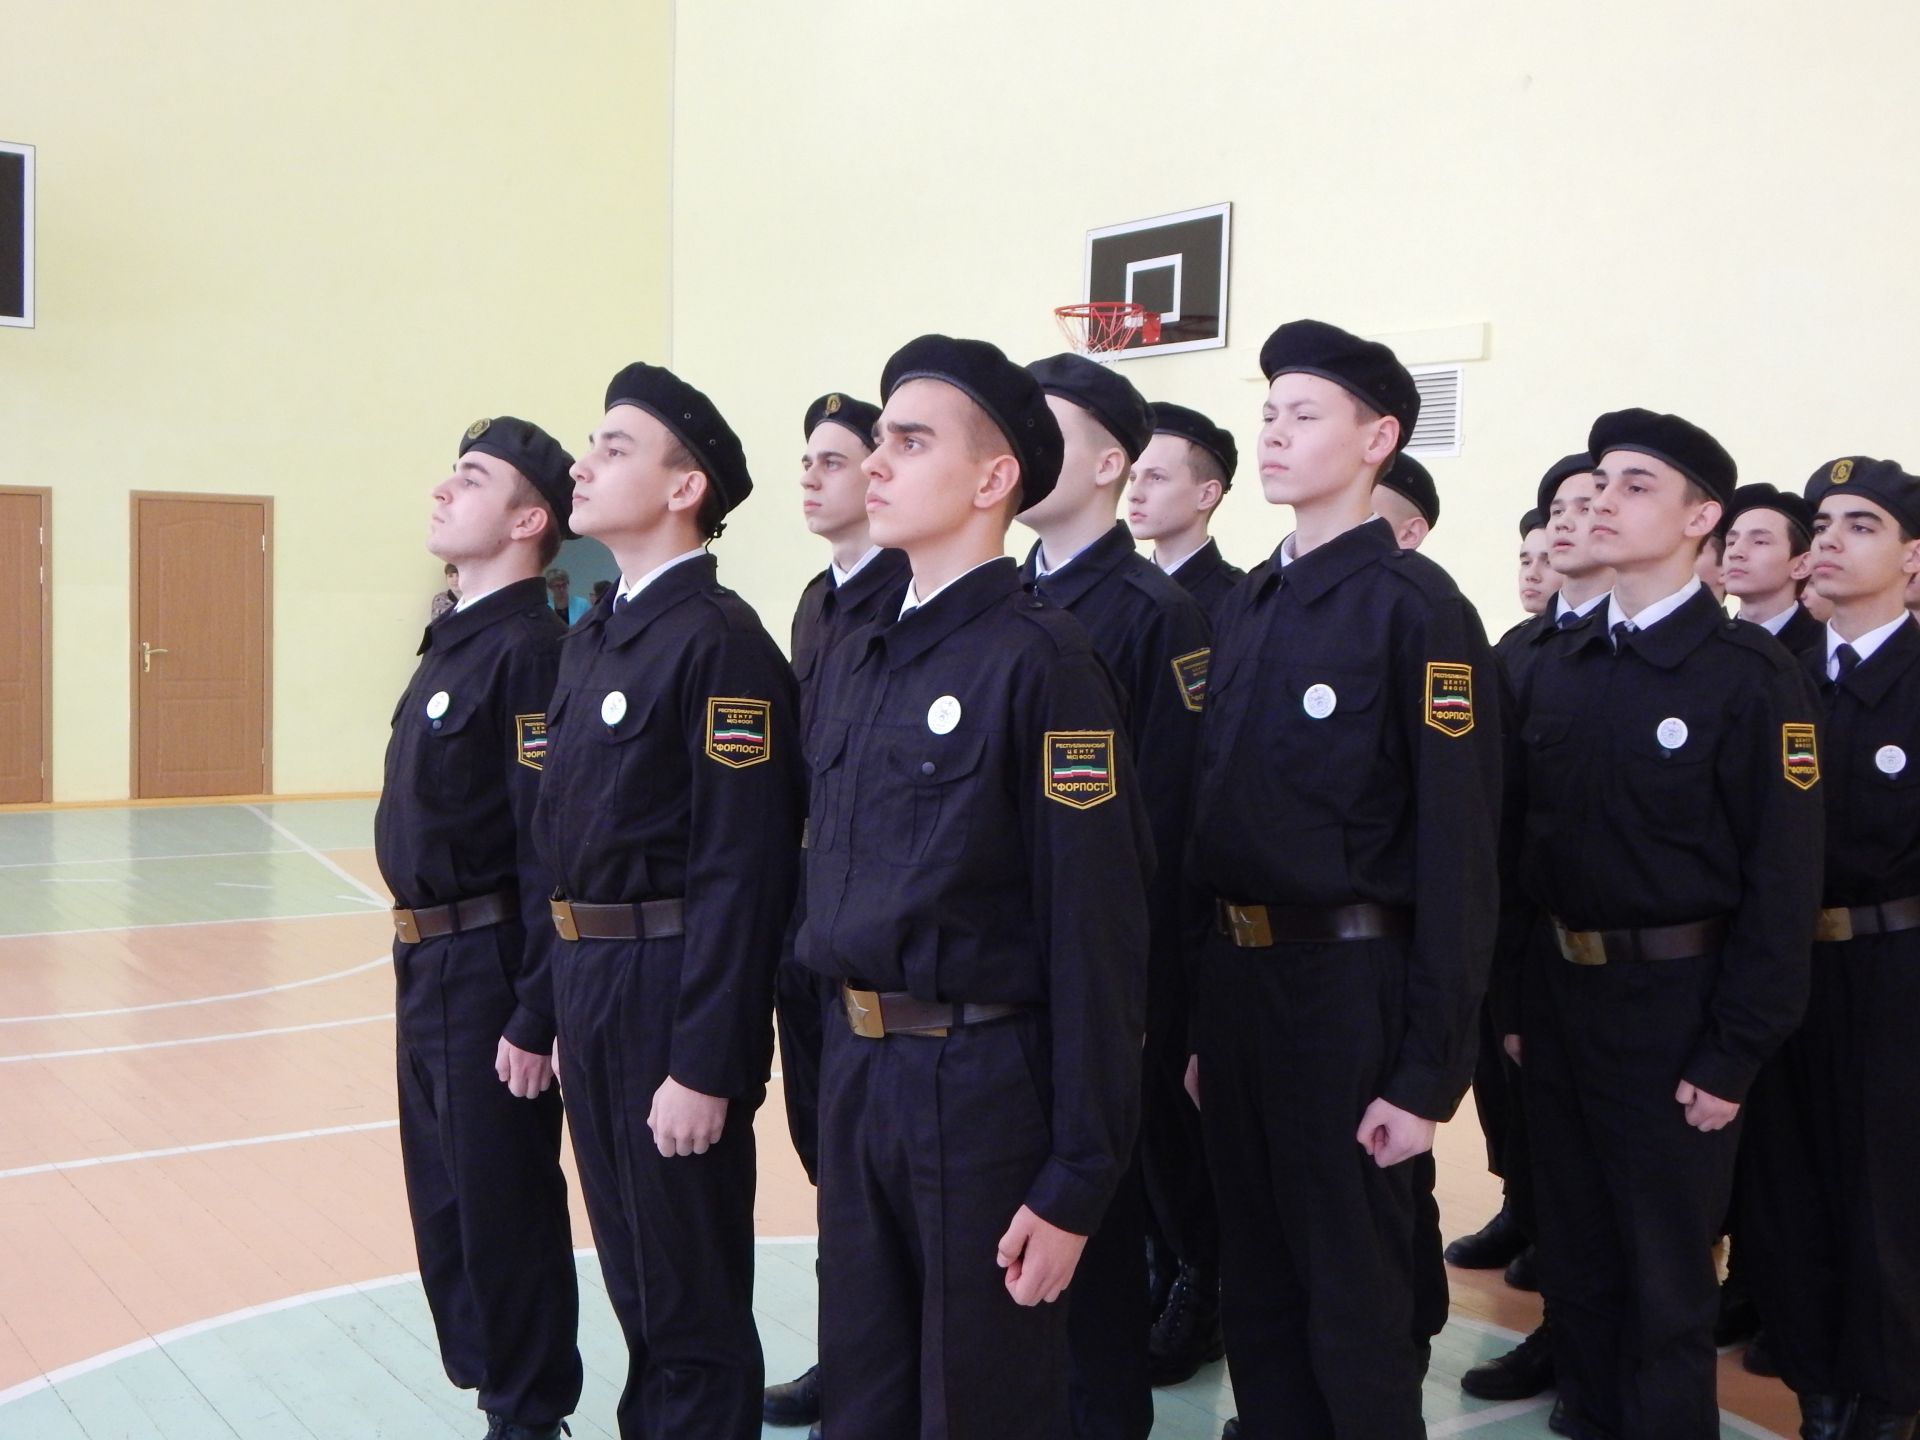 Дети Камских Полян торжественно поздравили ветеранов ВОВ